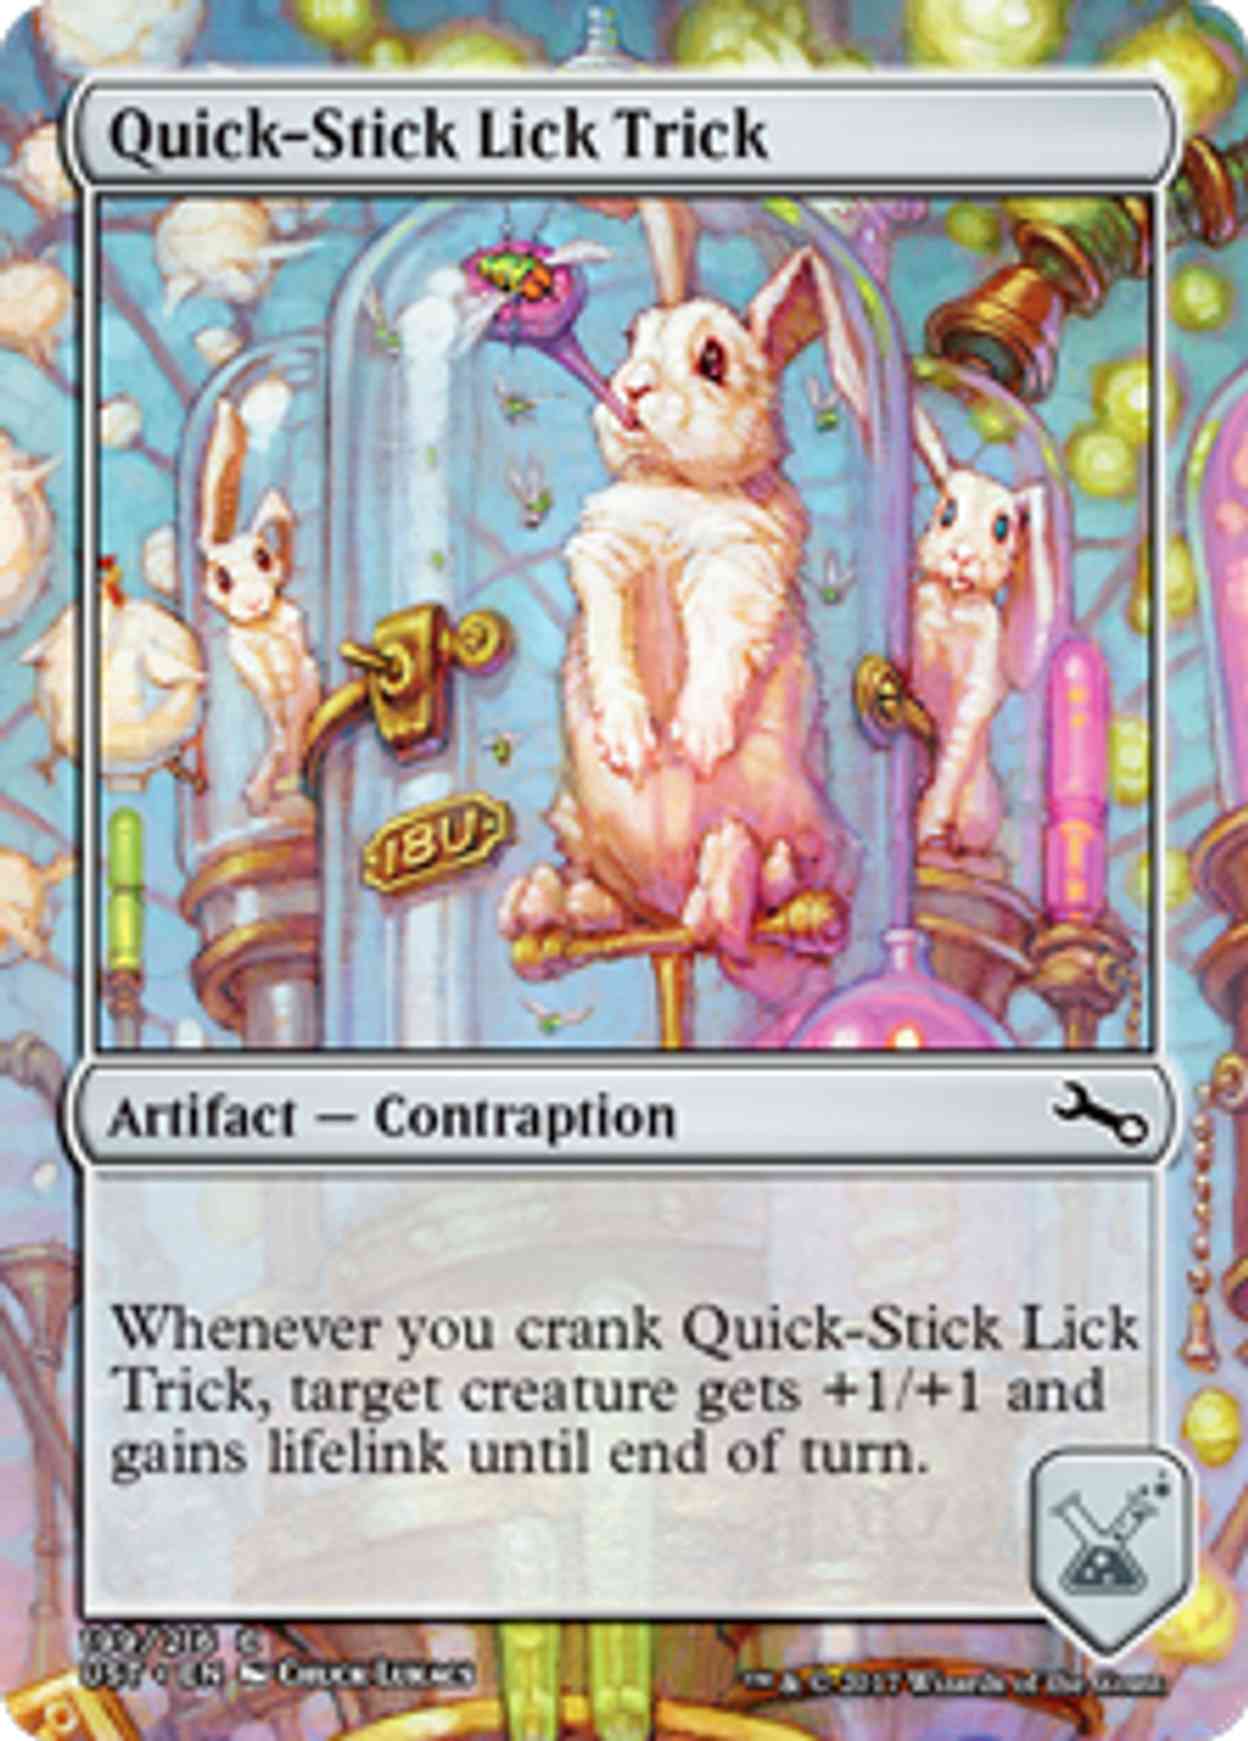 Quick-Stick Lick Trick magic card front